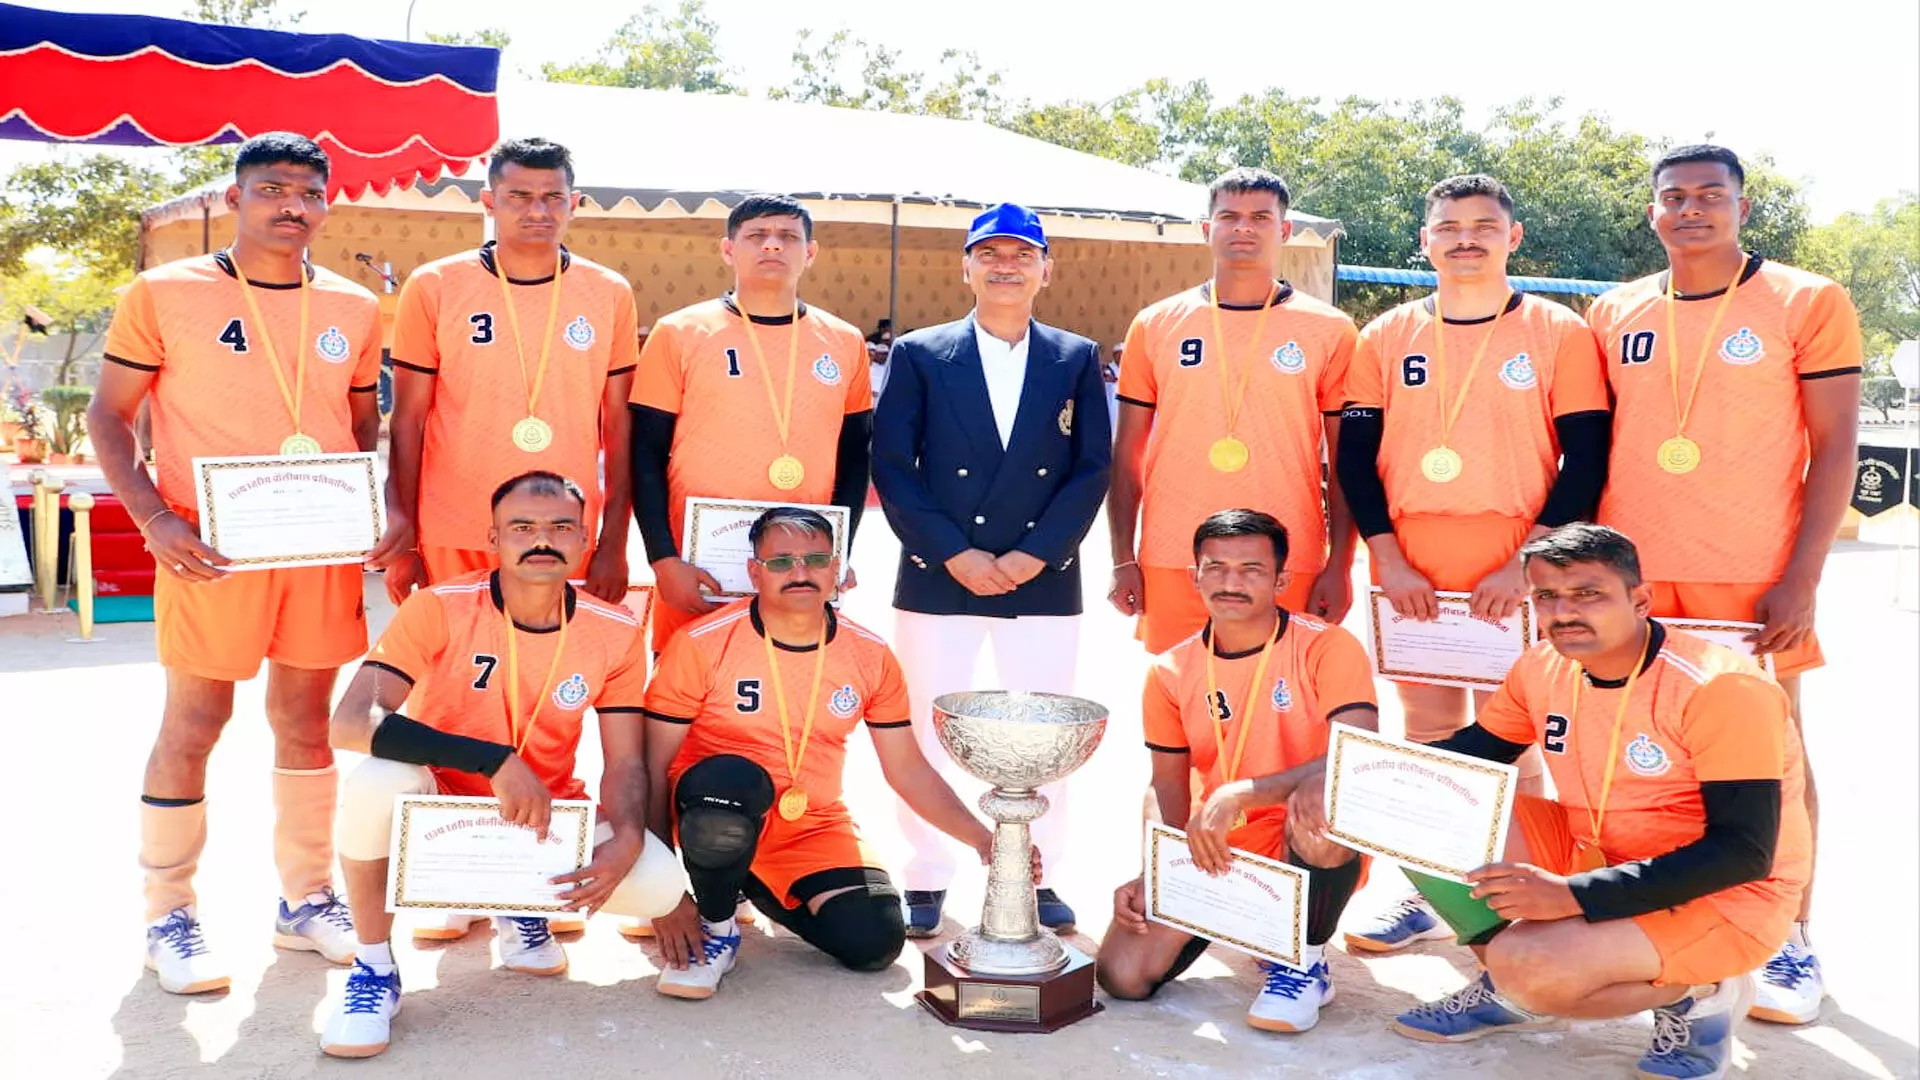 राज्य स्तरीय गृह रक्षा वॉलीबॉल प्रतियोगिता -उदयपुर संभाग ने जीता खिताब, जयपुर